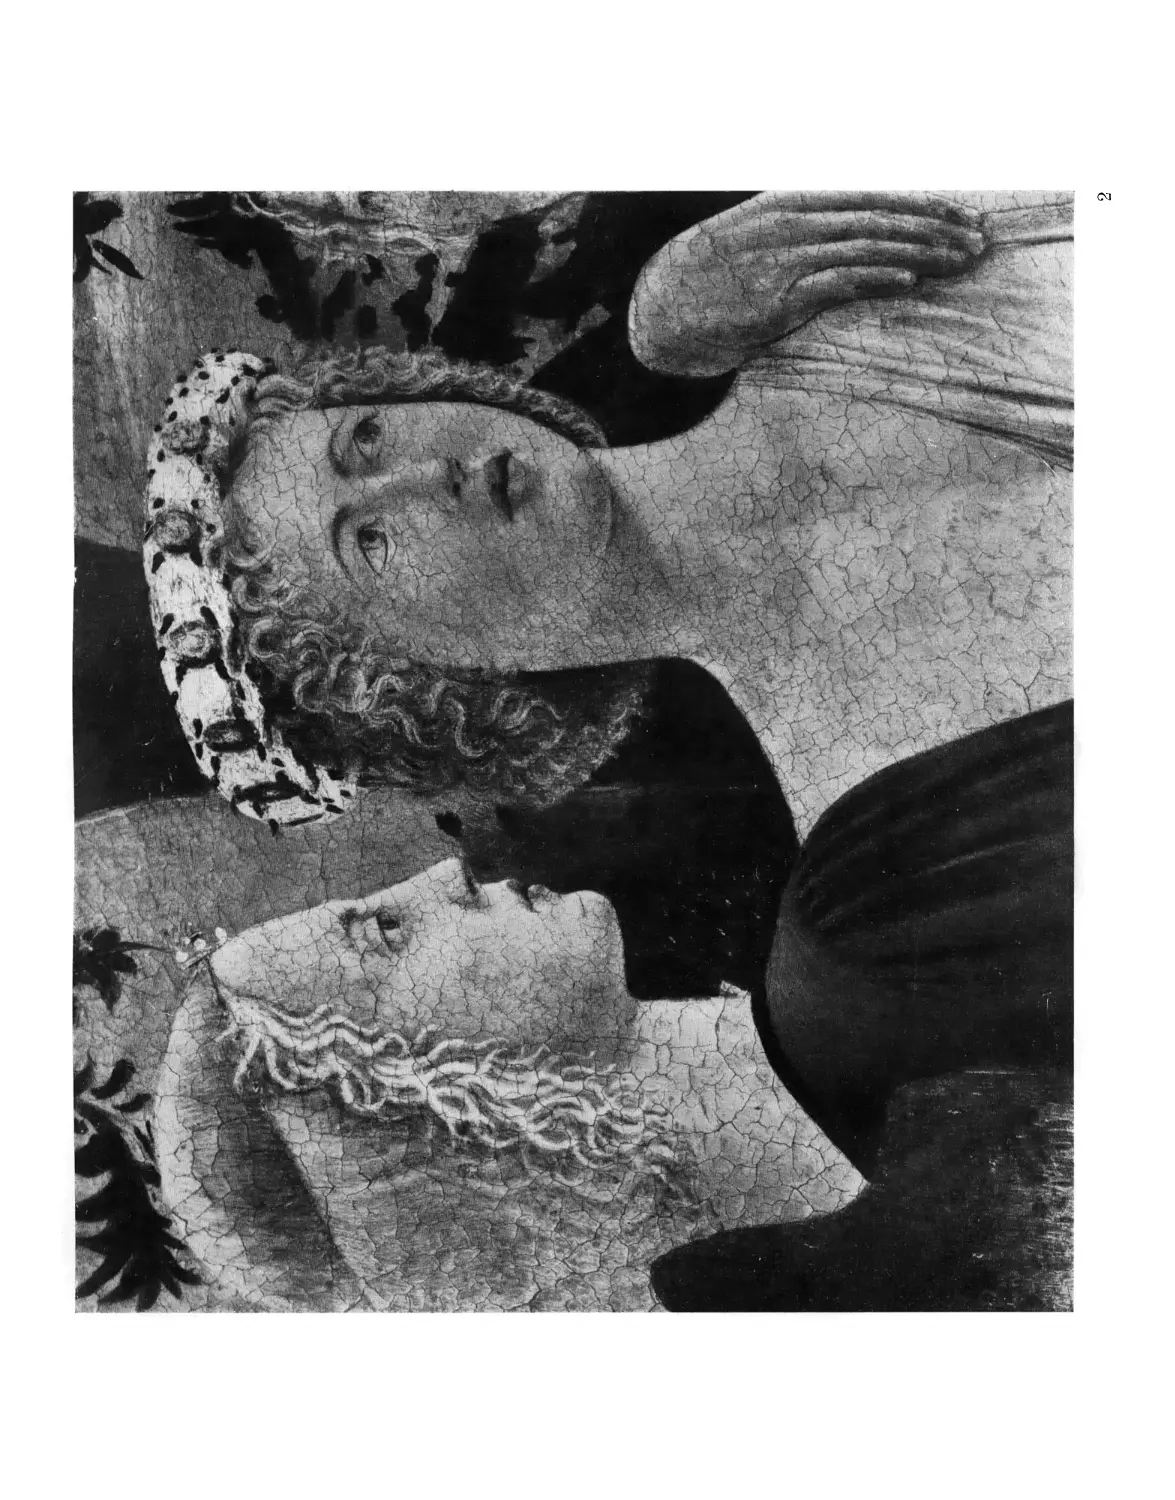 Вклейка. 2. Пьеро делла Франческа. Ангелы. Часть картины „Крещение“ 1440-45 гг. Лондон, Национальная галерея